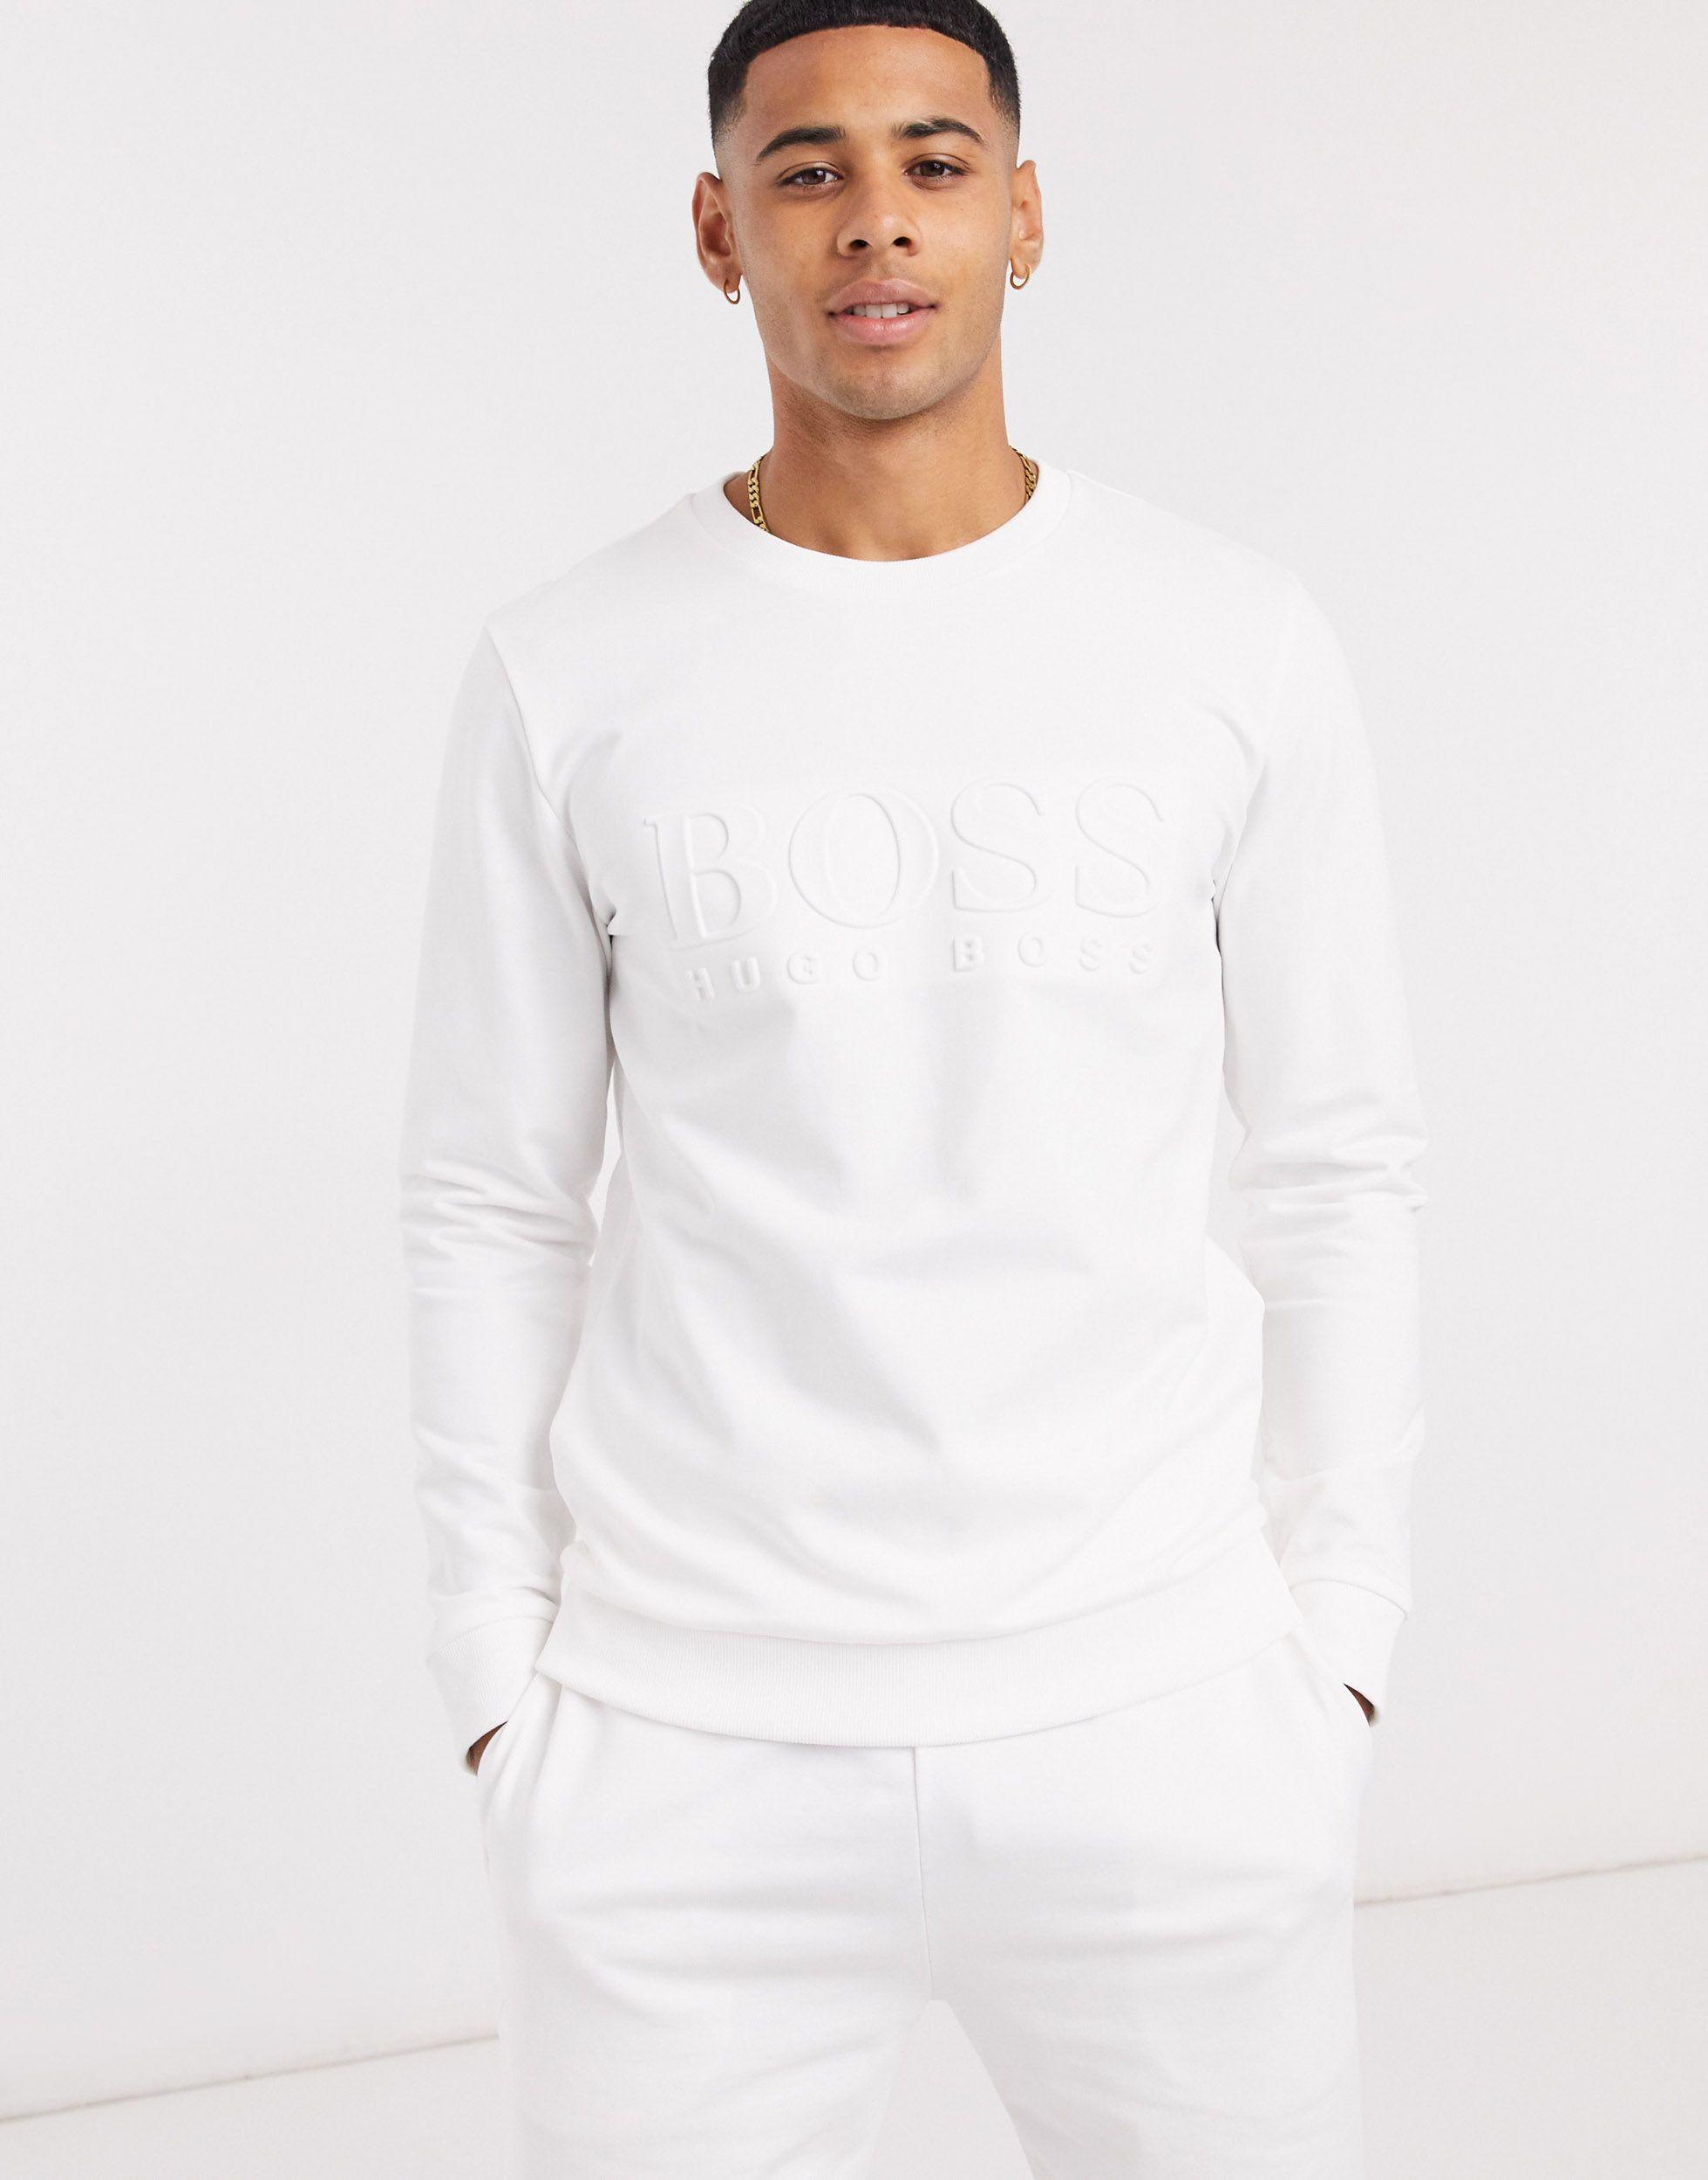 BOSS by HUGO BOSS Heritage Embossed Logo Sweatshirt in White for Men - Lyst